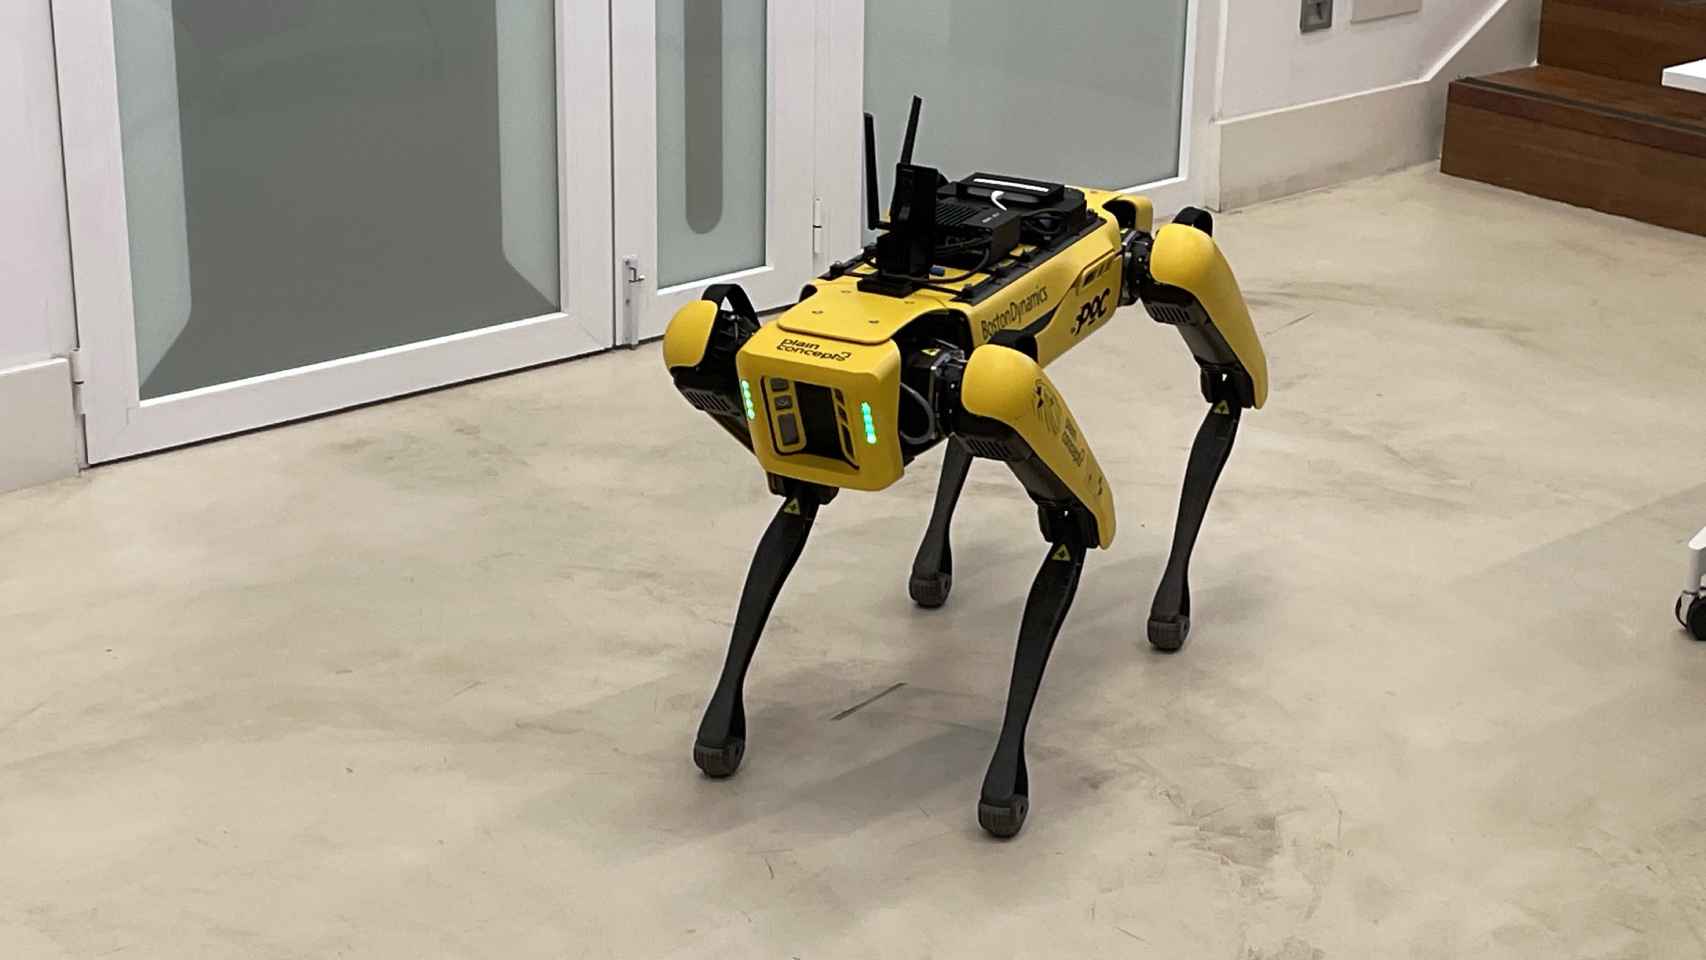 Spot, el perro robot de Boston Dynamics llega a Madrid.